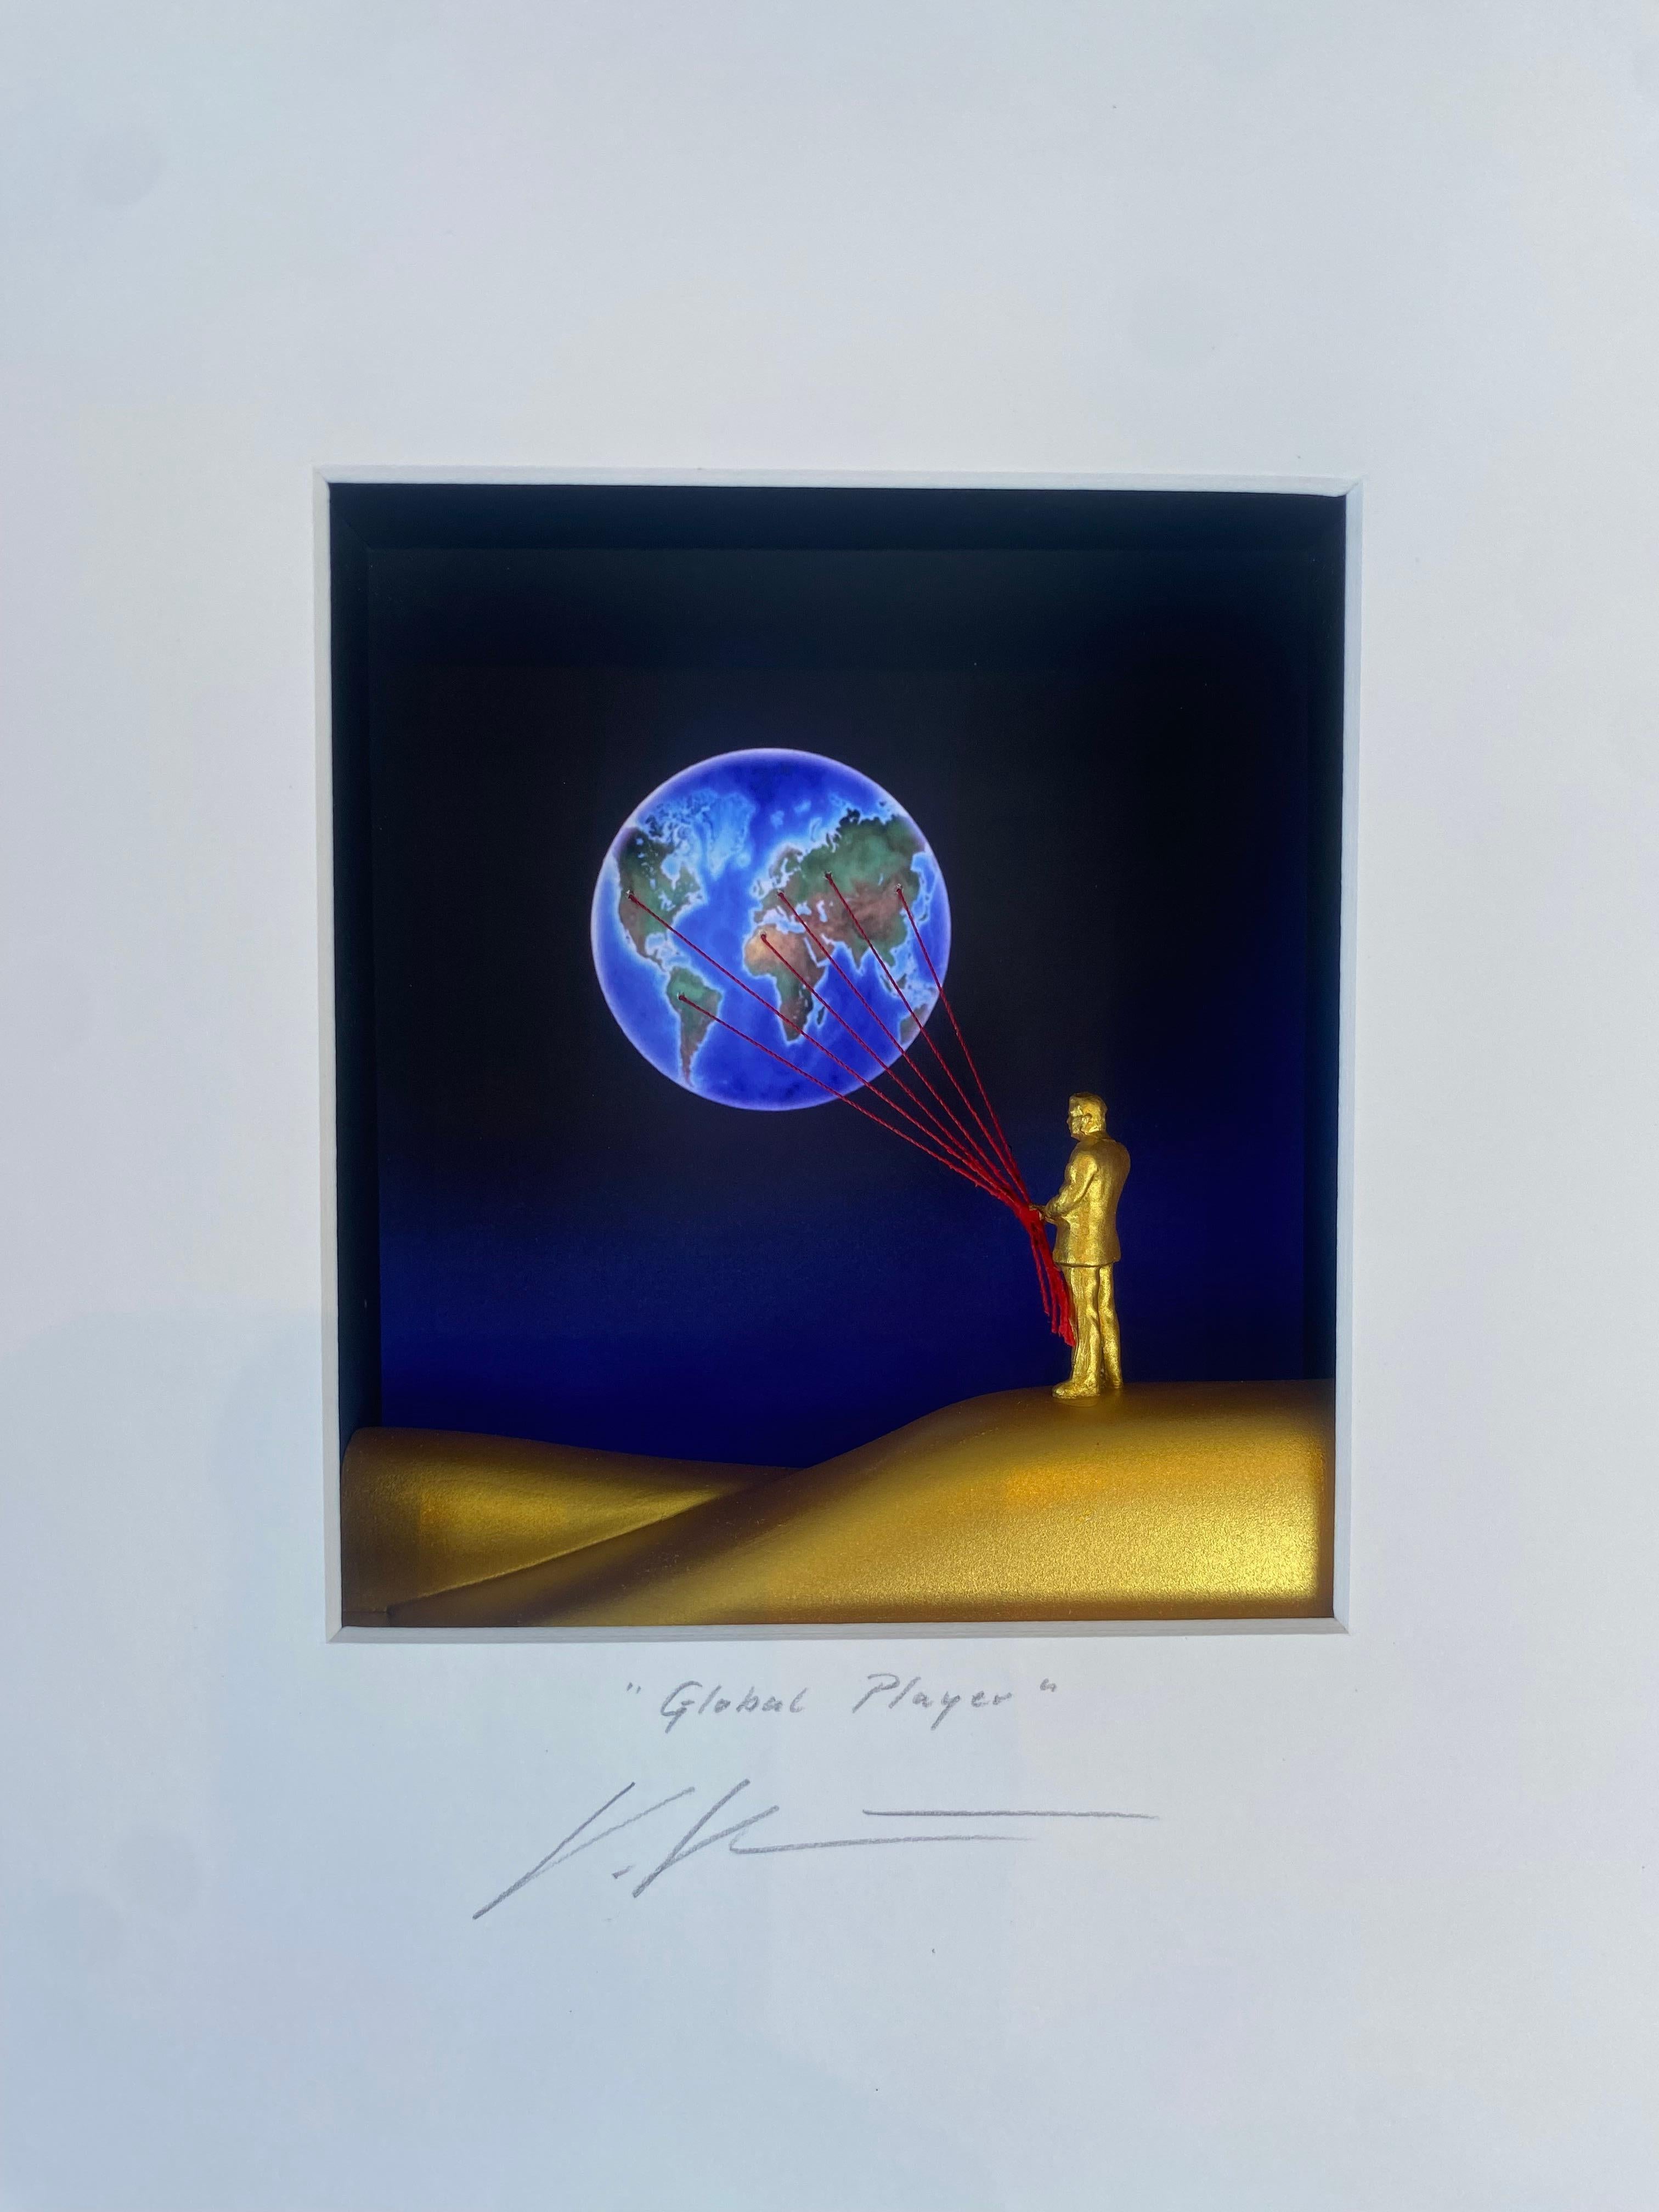 Global Player – zeitgenössische Kunst in Schachteln von Volker Kuhn mit einem Menschen, der einen Globus hält